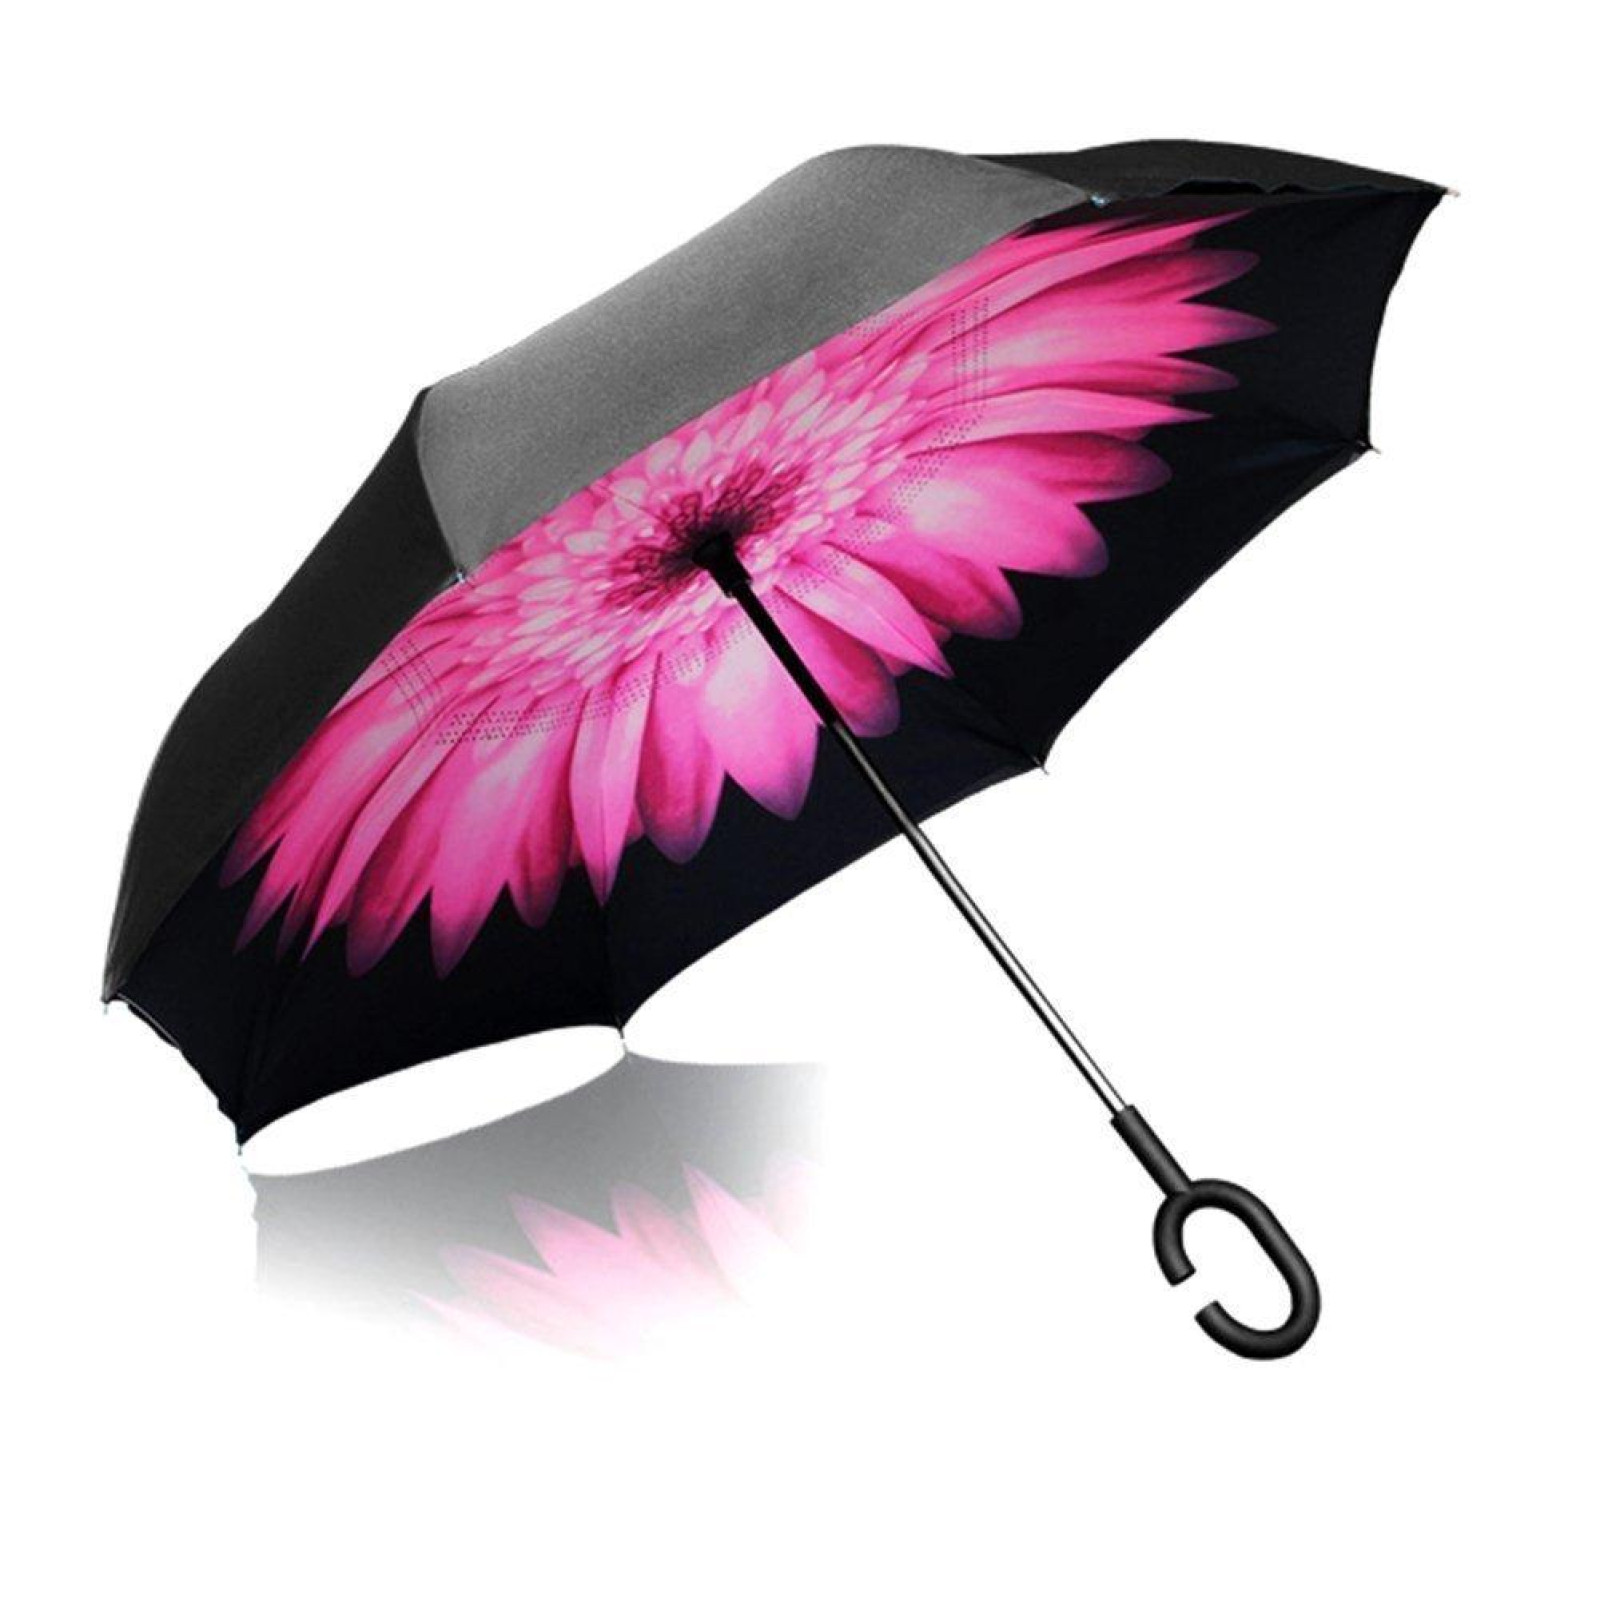 Зонт обратного сложения, антизонт, умный зонт, зонт наоборот Up Brella Цветок Розовый 154308